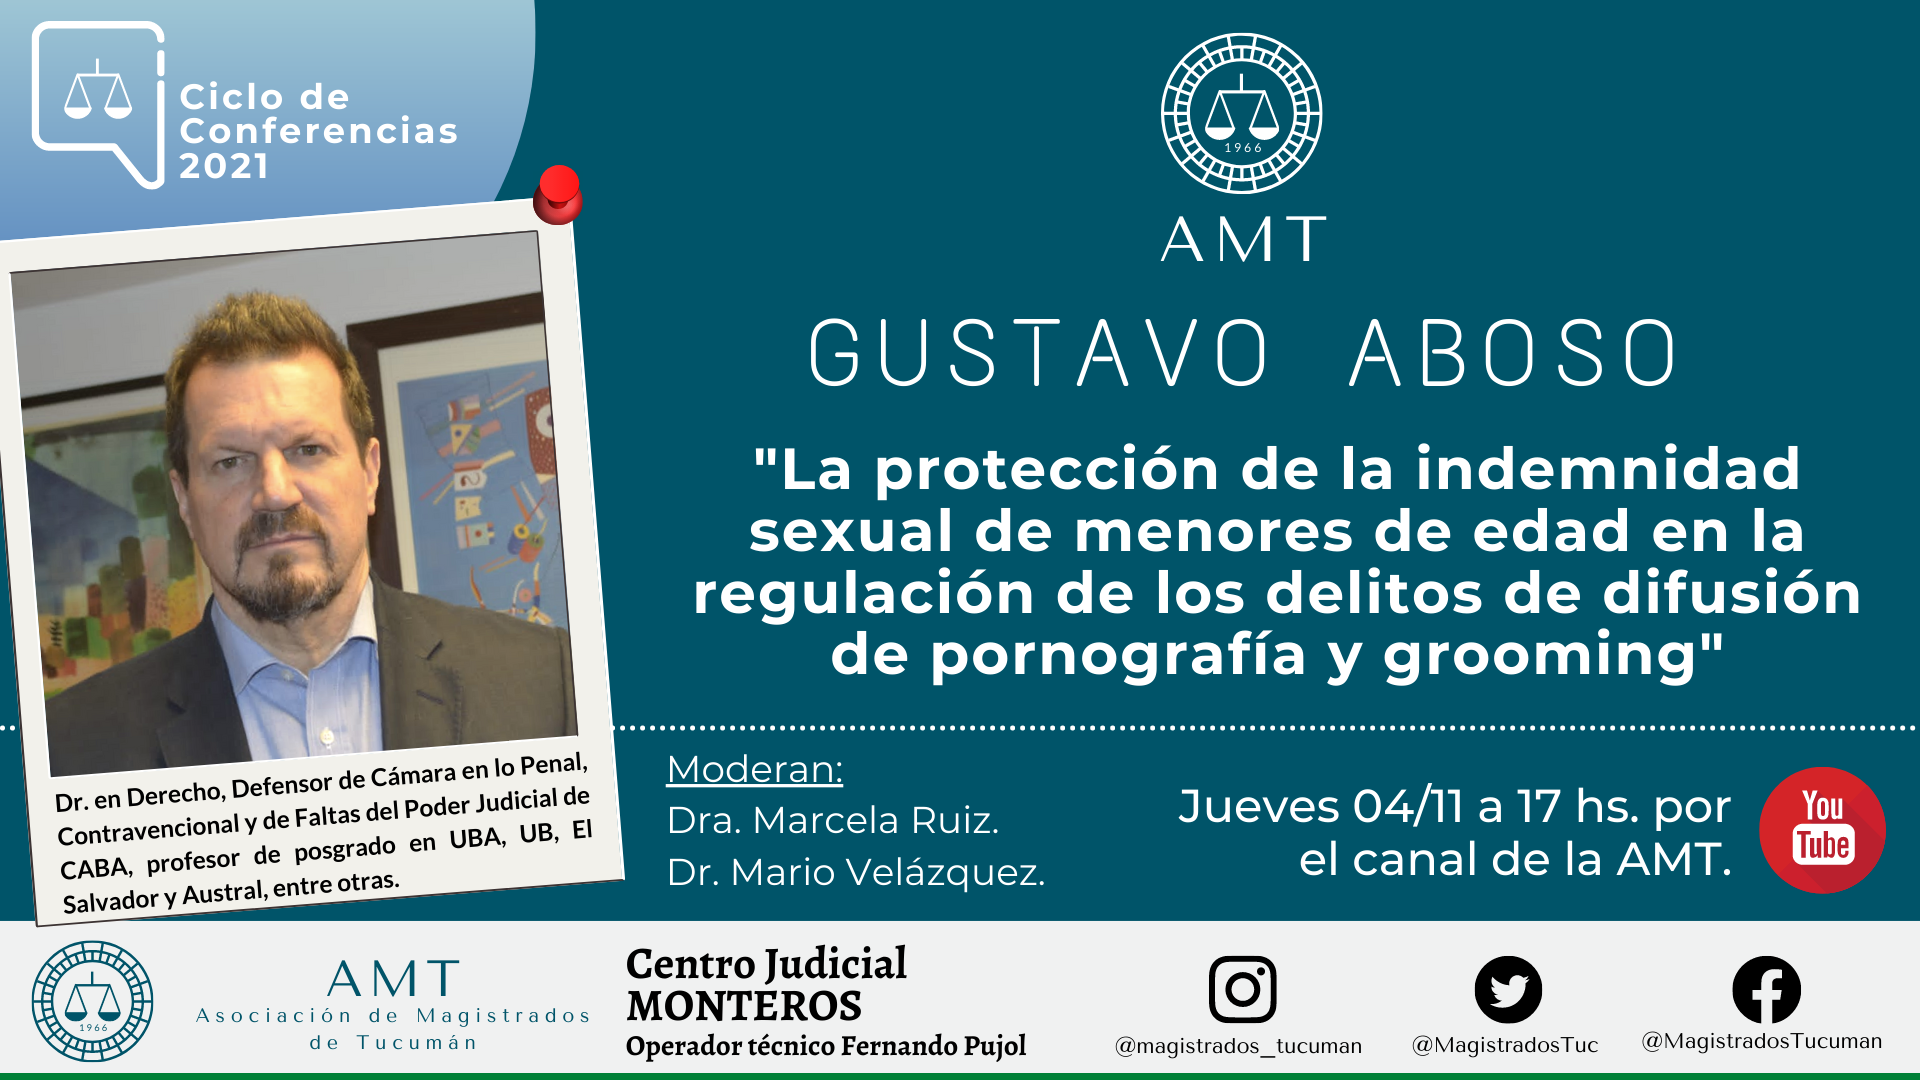 Vuelva a ver la conferencia de Gustavo Aboso «La protección de la indemnidad sexual de menores de edad»